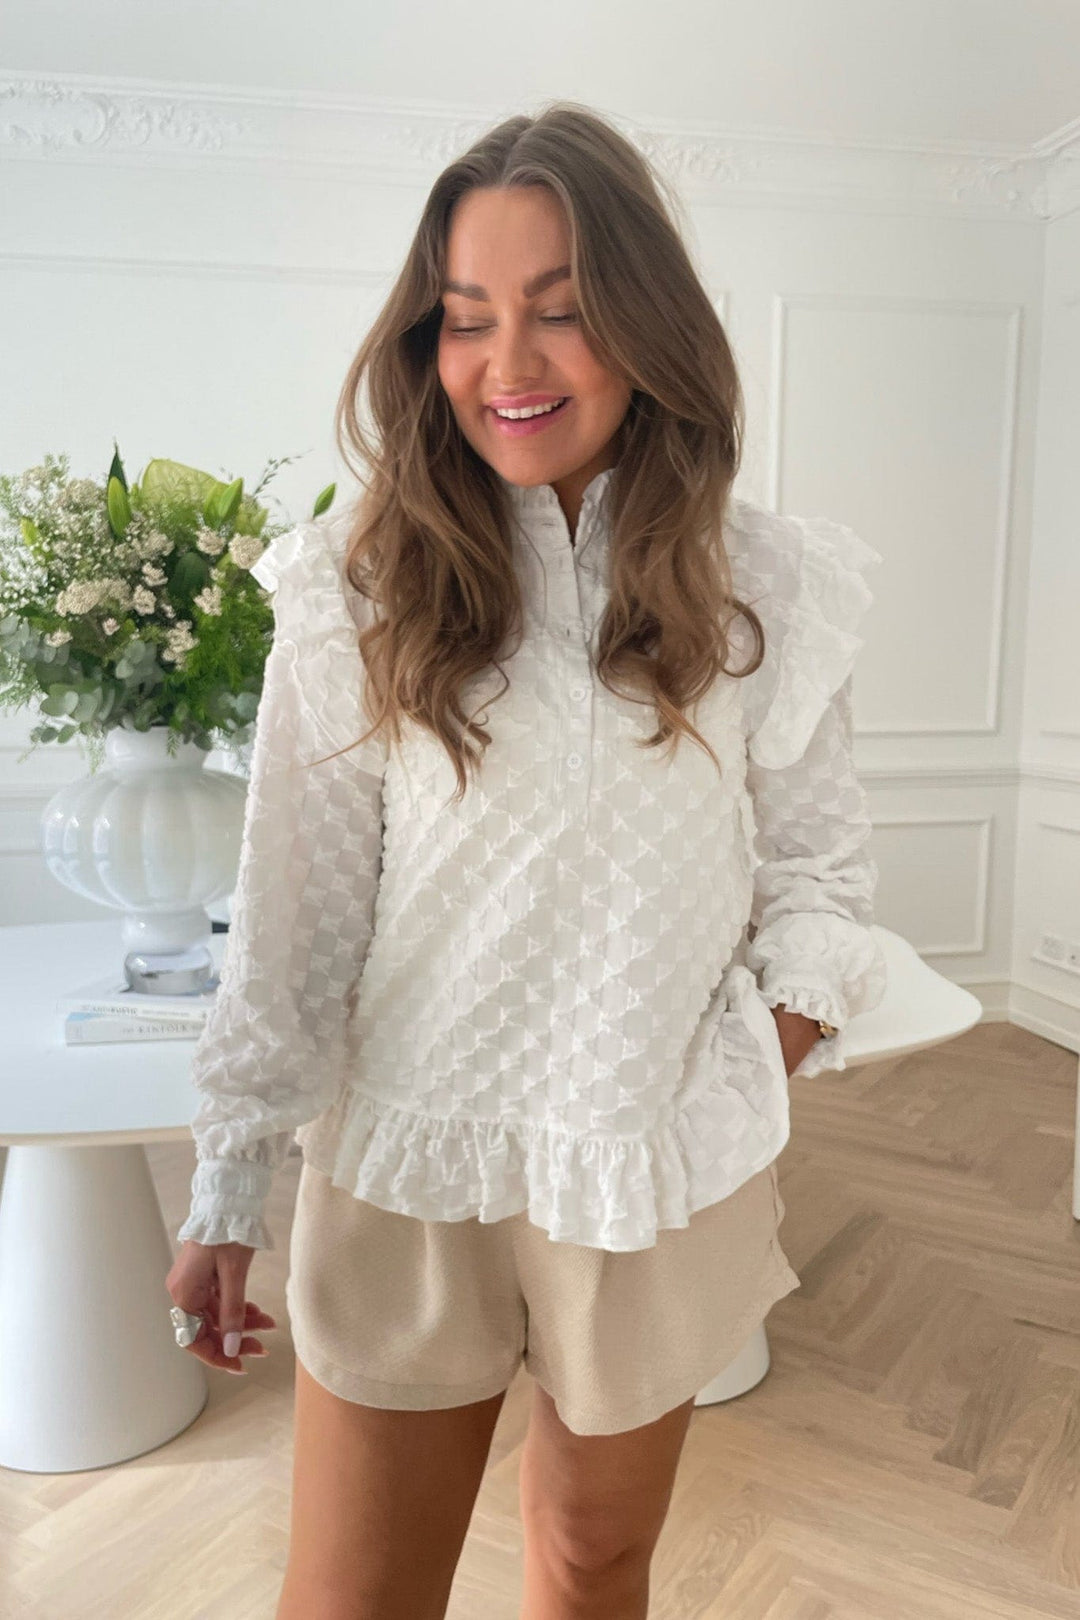 Nuna Shirt Bubble White | Skjorter og bluser | Smuk - Dameklær på nett